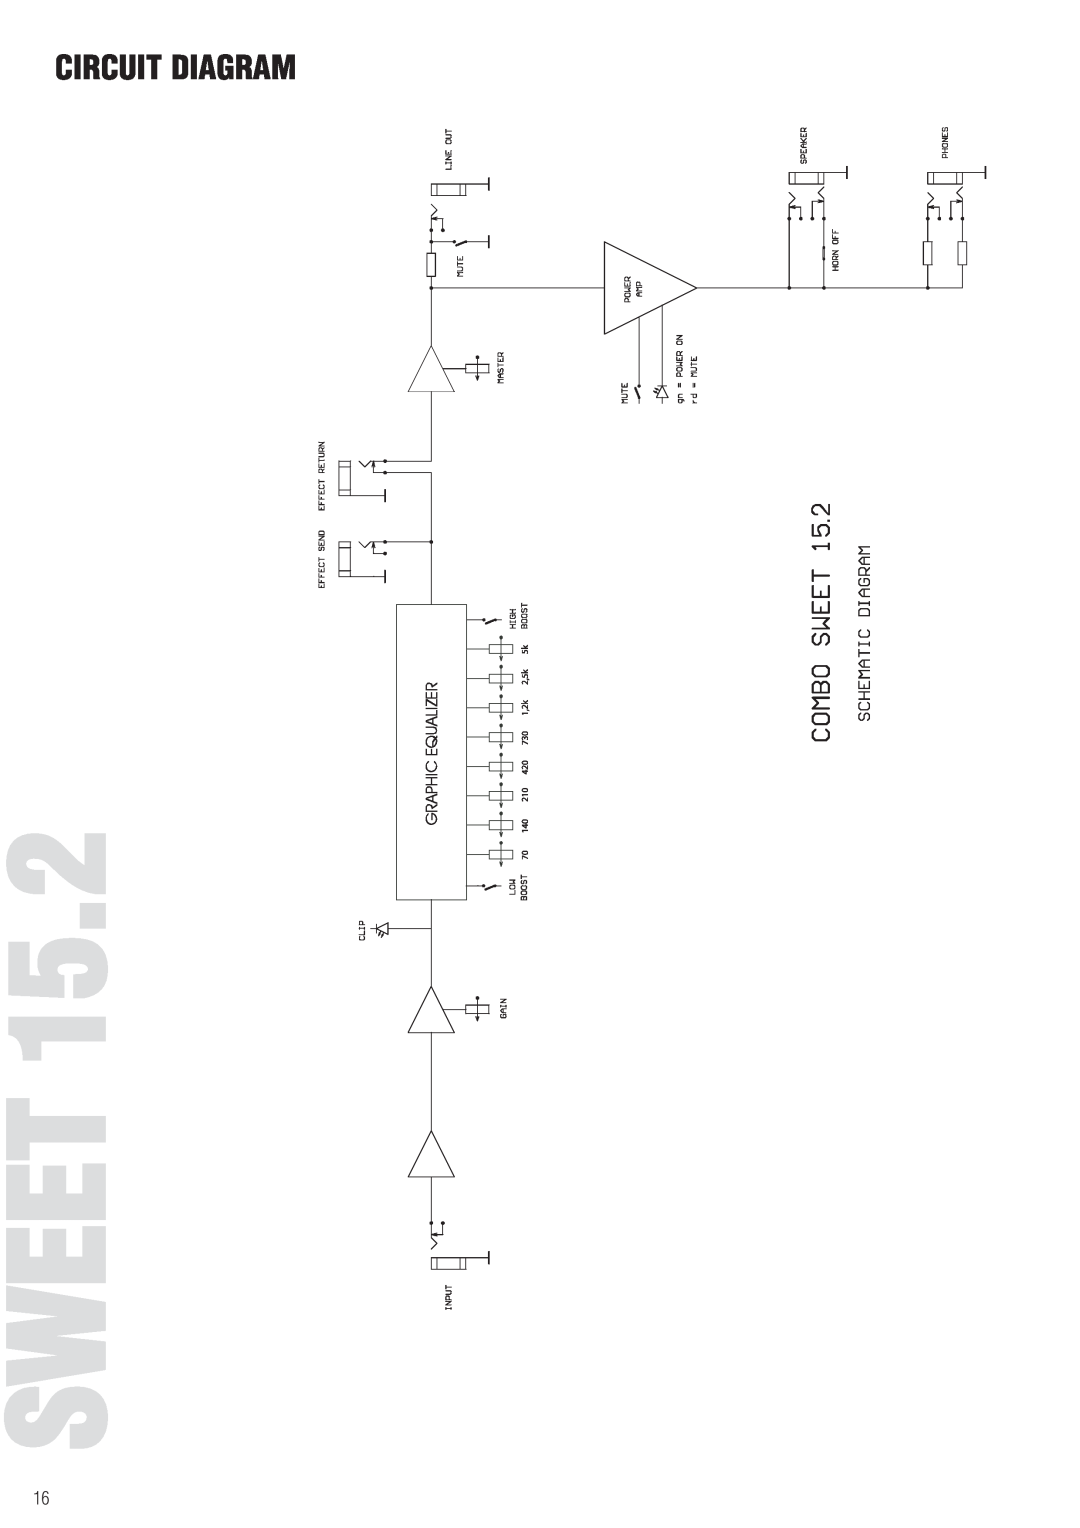 Warwick 25.1, 15.2 owner manual Sweet, Circuit Diagram 